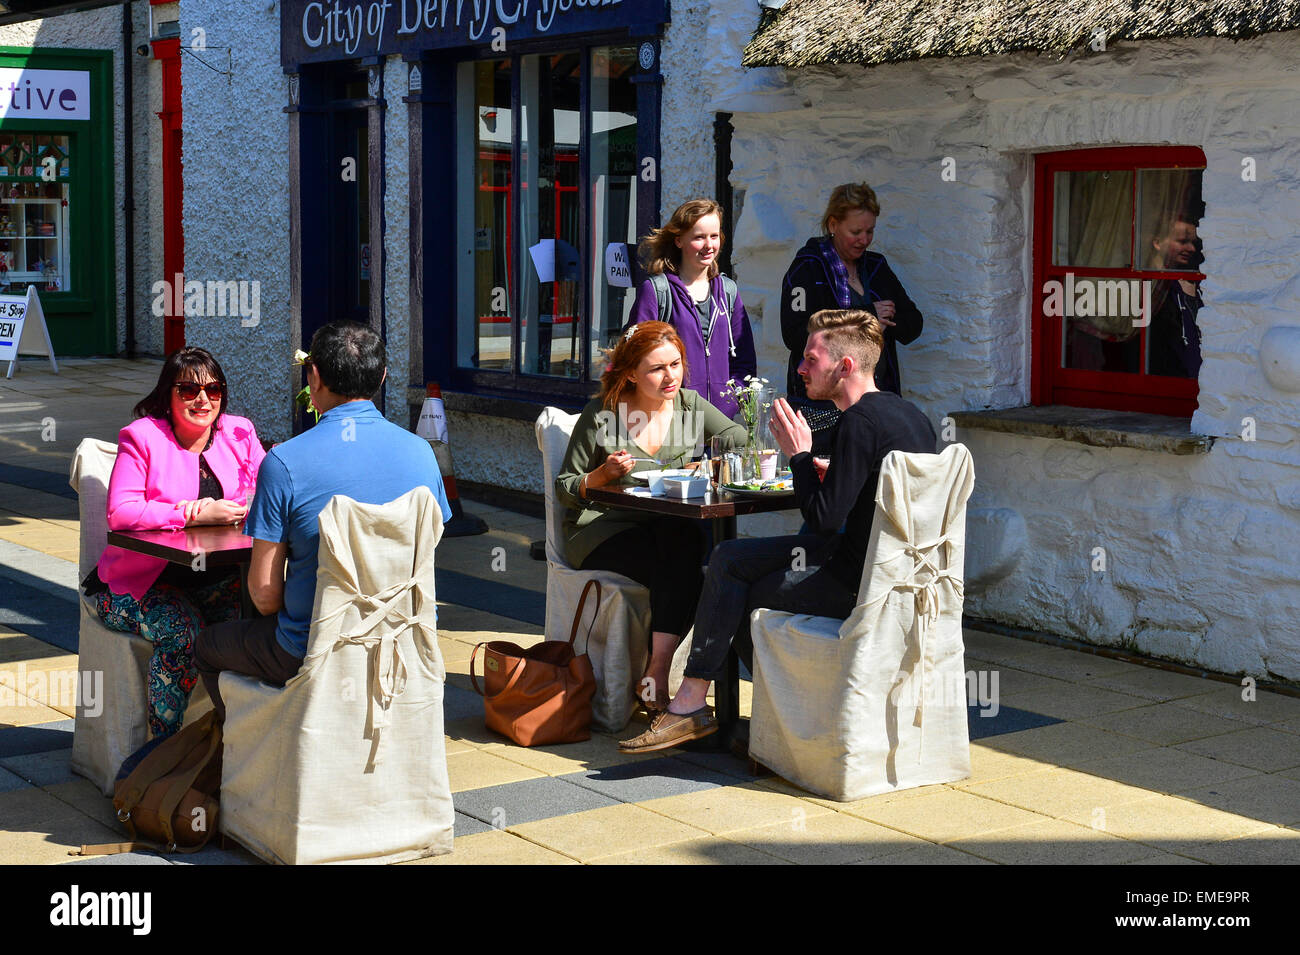 Persone mangiare al fresco nel villaggio artigianale, Londonderry (Derry), Irlanda del Nord Foto Stock